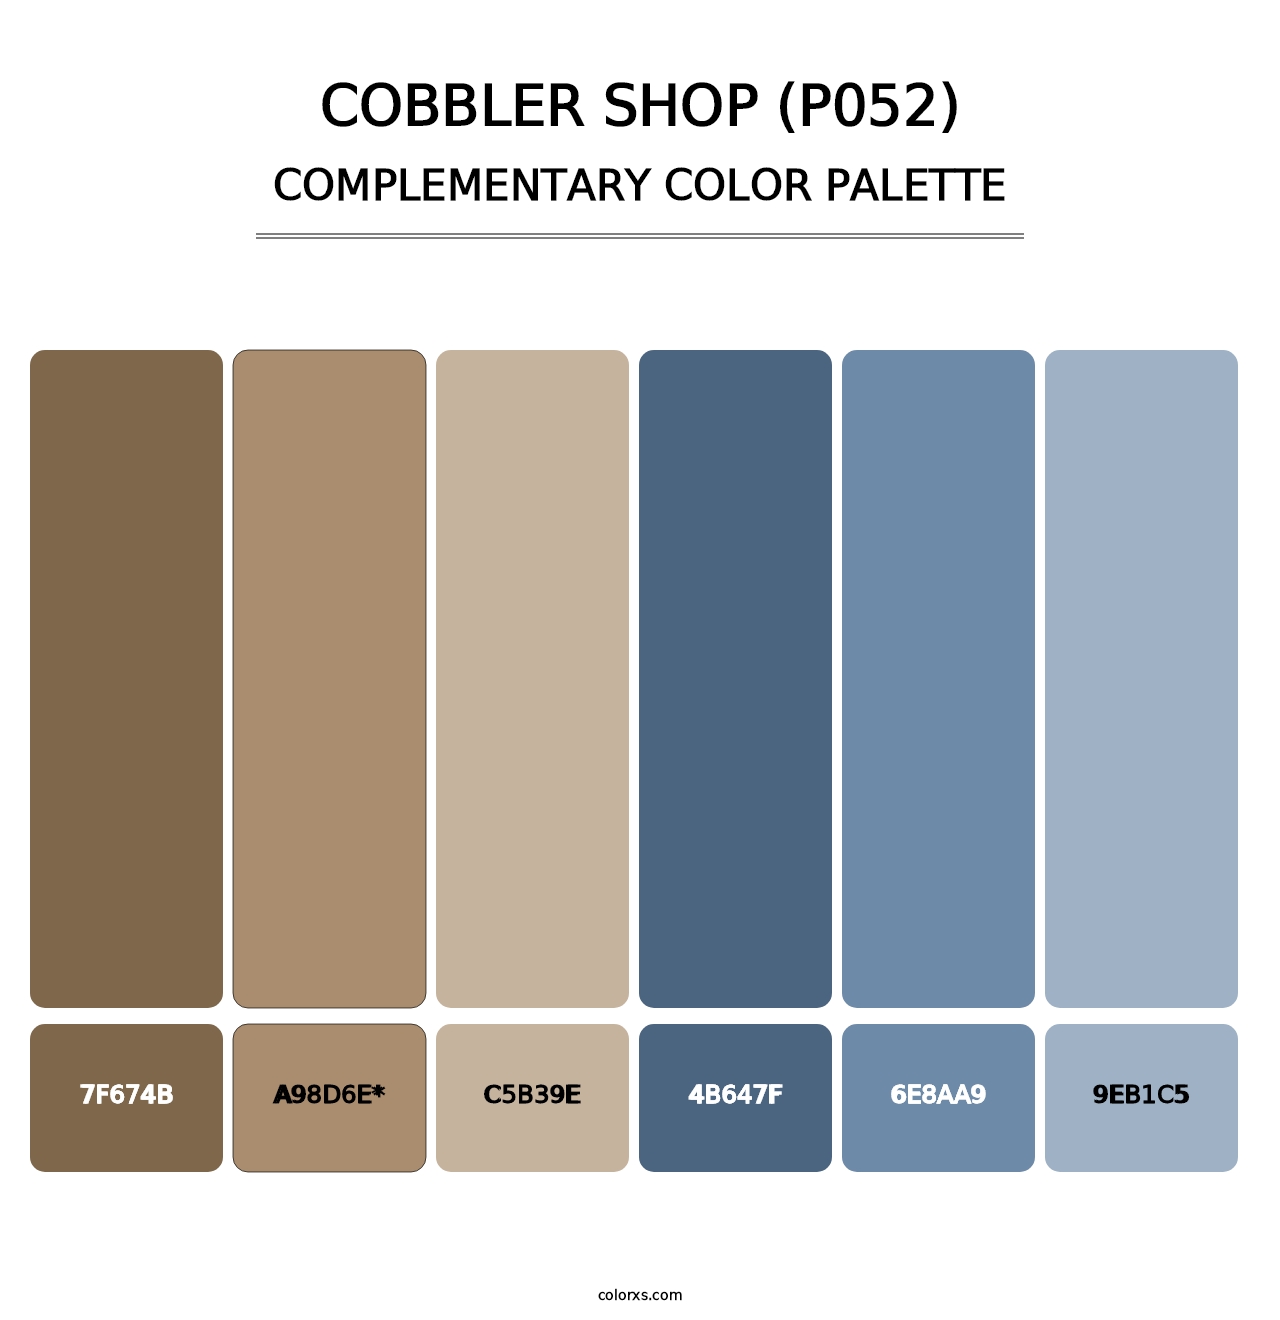 Cobbler Shop (P052) - Complementary Color Palette